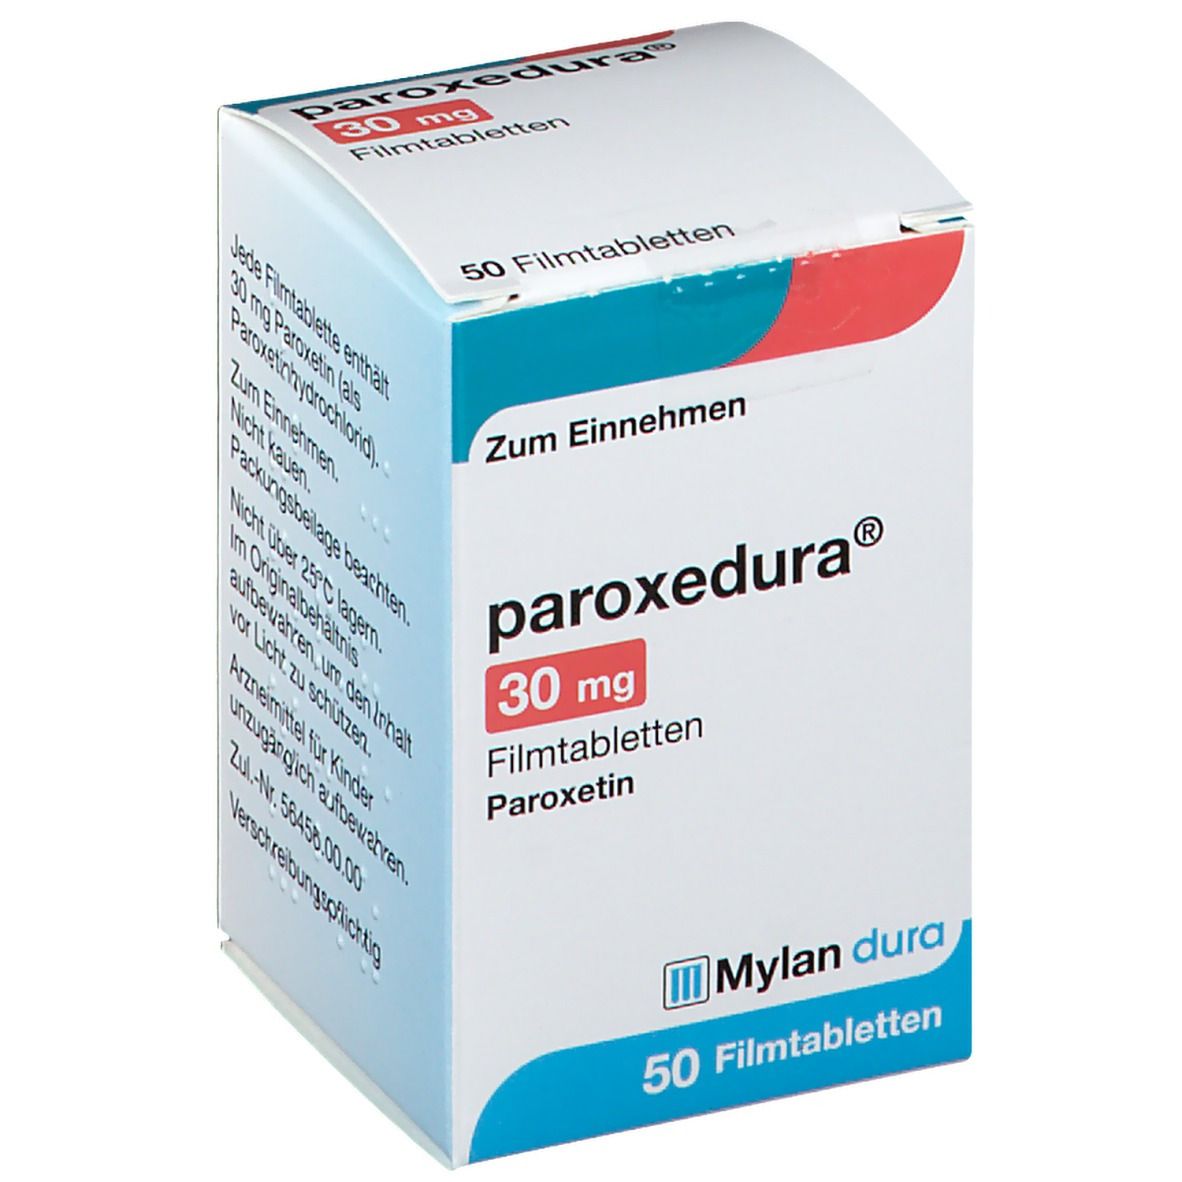 Paroxedura® 30 mg